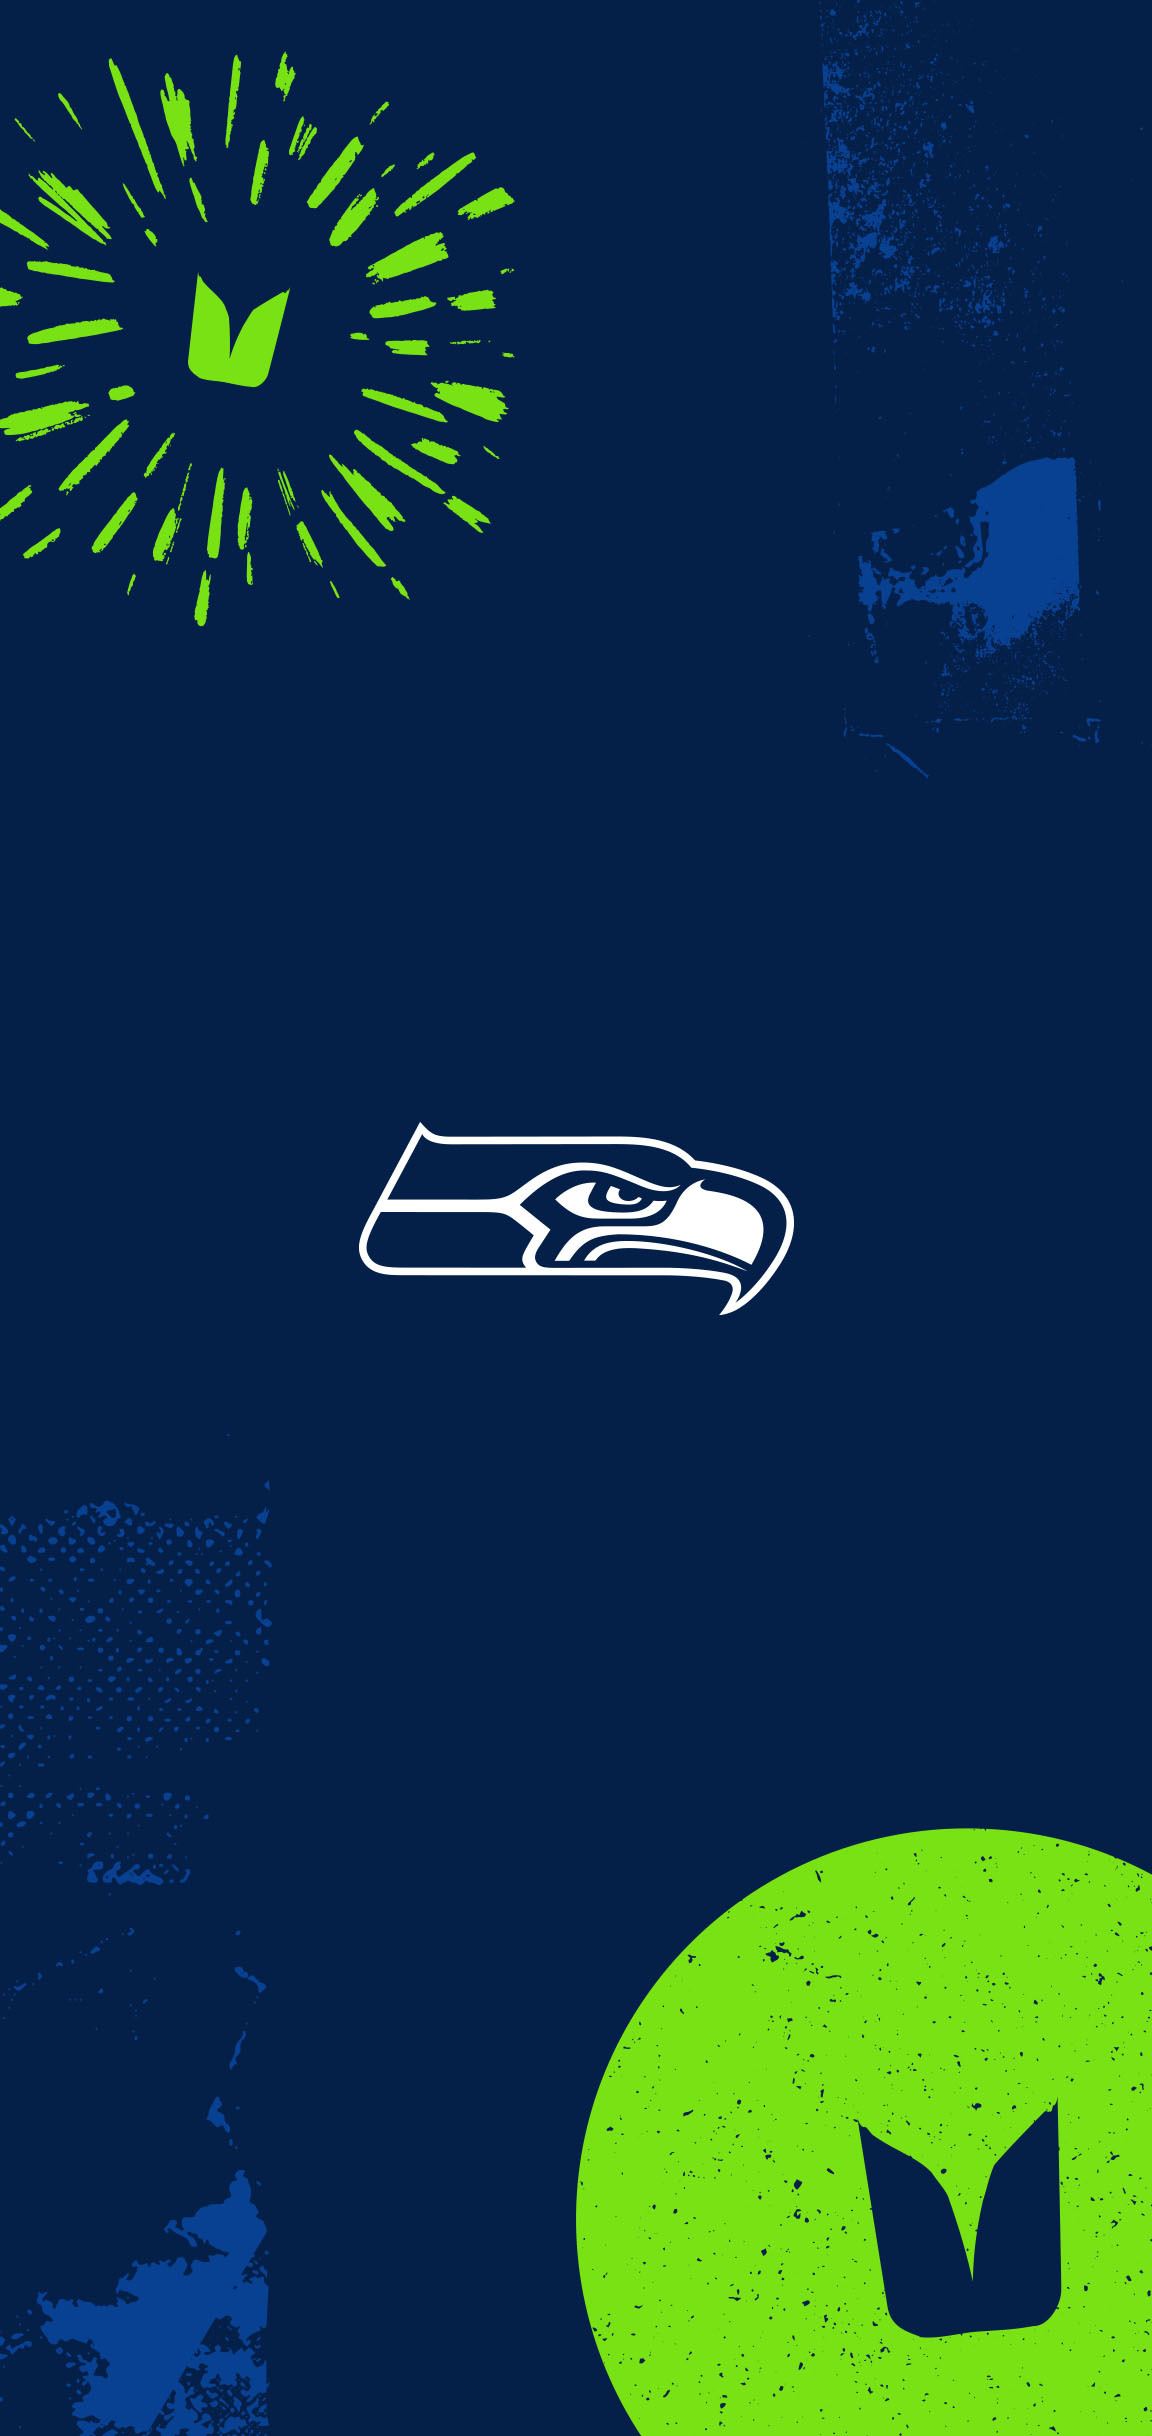 Seahawks Mobile Wallpapers Seattle Seahawks seahawkscom